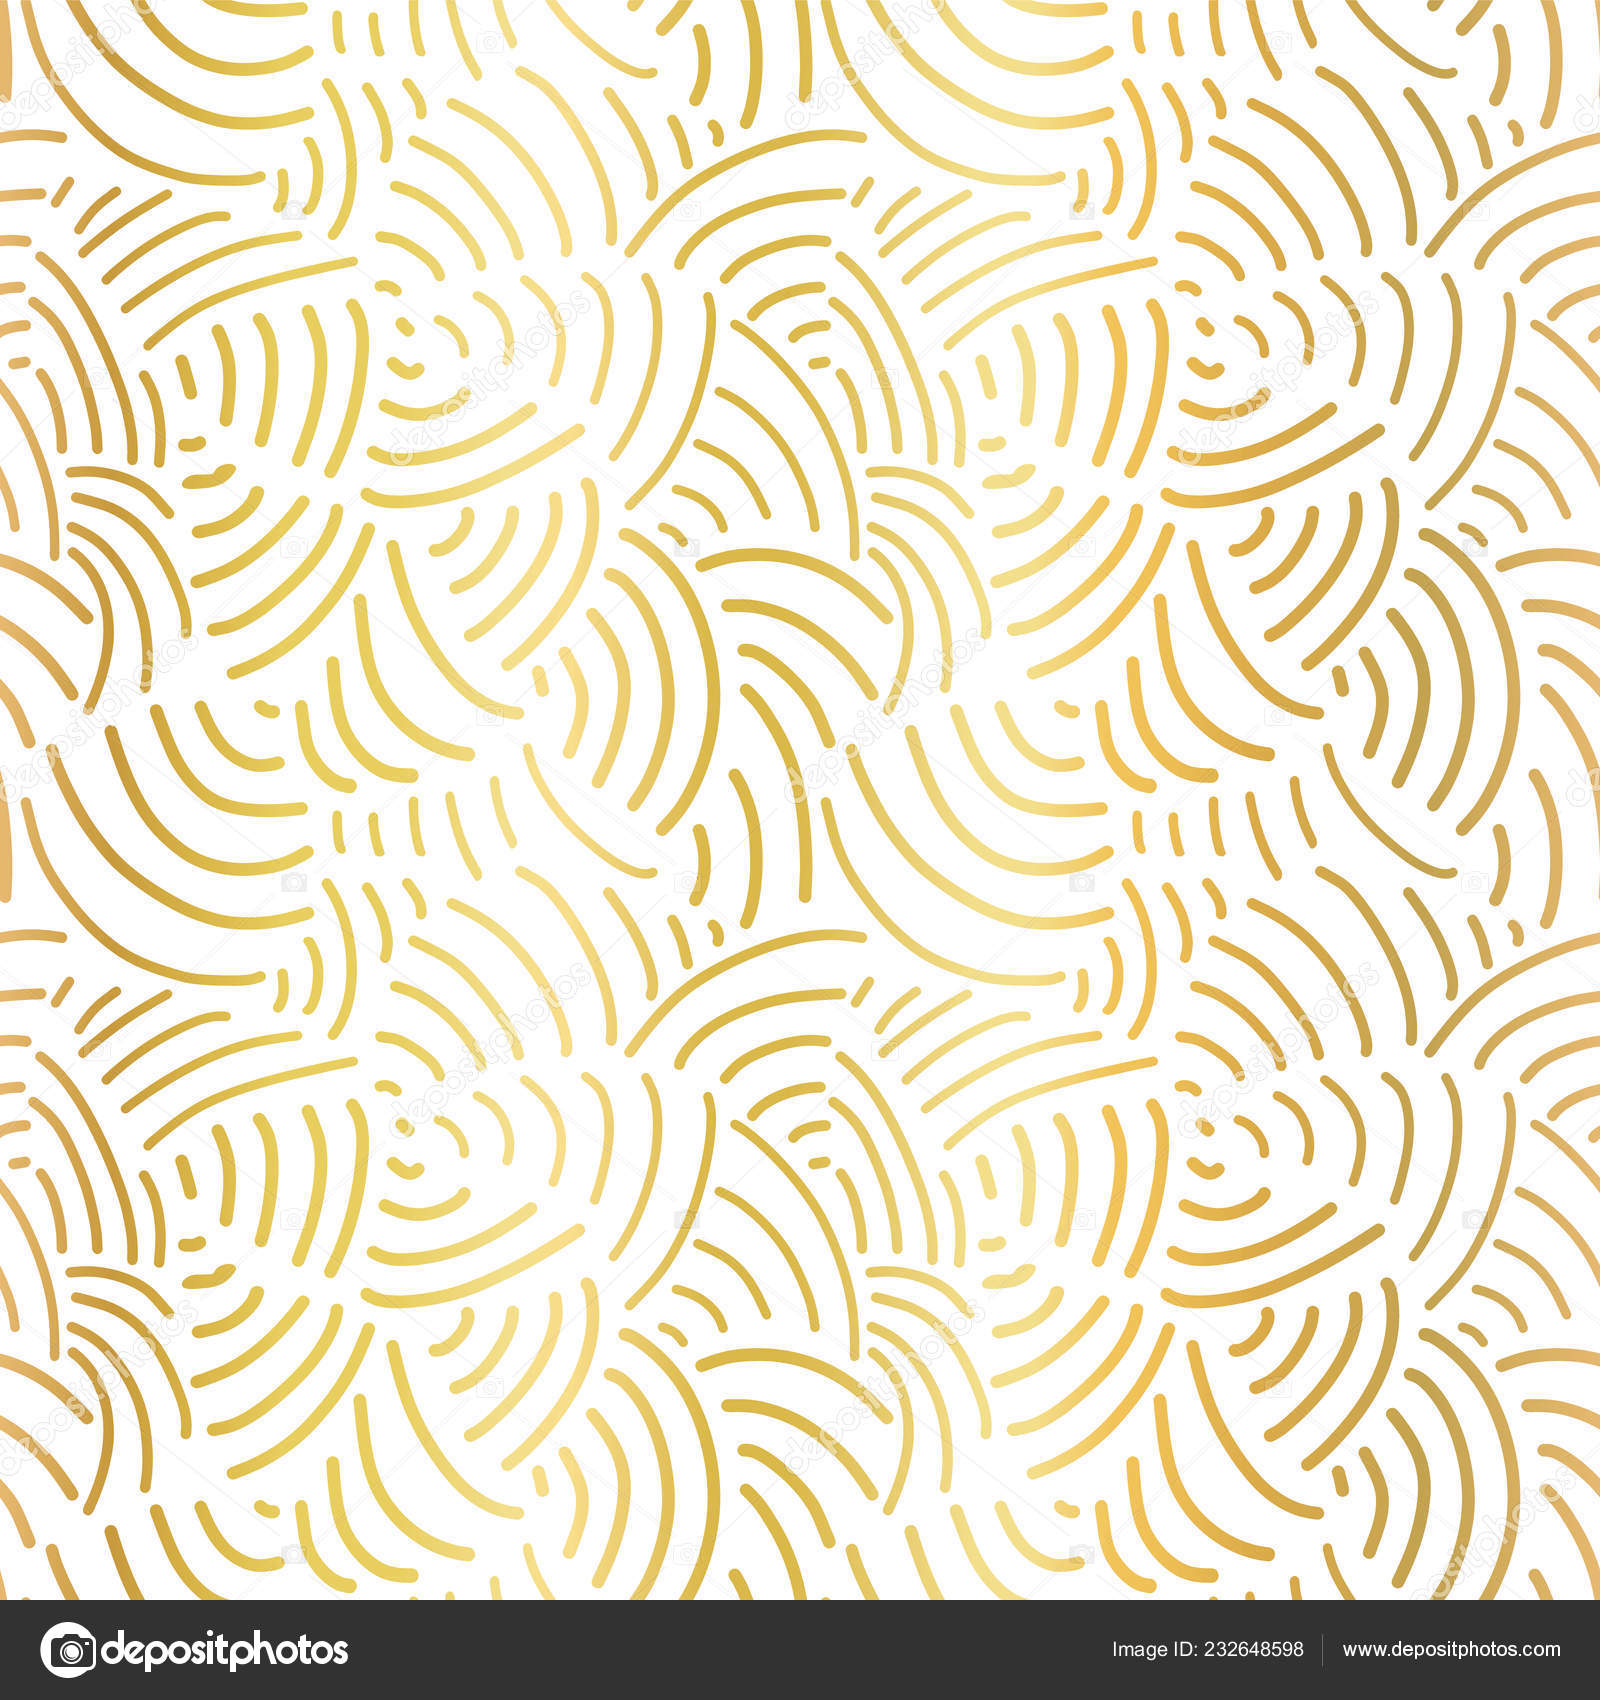 Mẫu họa tiết hoa văn đường cong mạ vàng sẽ làm bạn không khỏi ngưỡng mộ với sự nghệ thuật tuyệt vời của người thiết kế. Với màu vàng rực rỡ được phối hợp tinh tế trên nền trắng, họa tiết này sẽ khiến cho không gian trở nên sang trọng và ấn tượng.